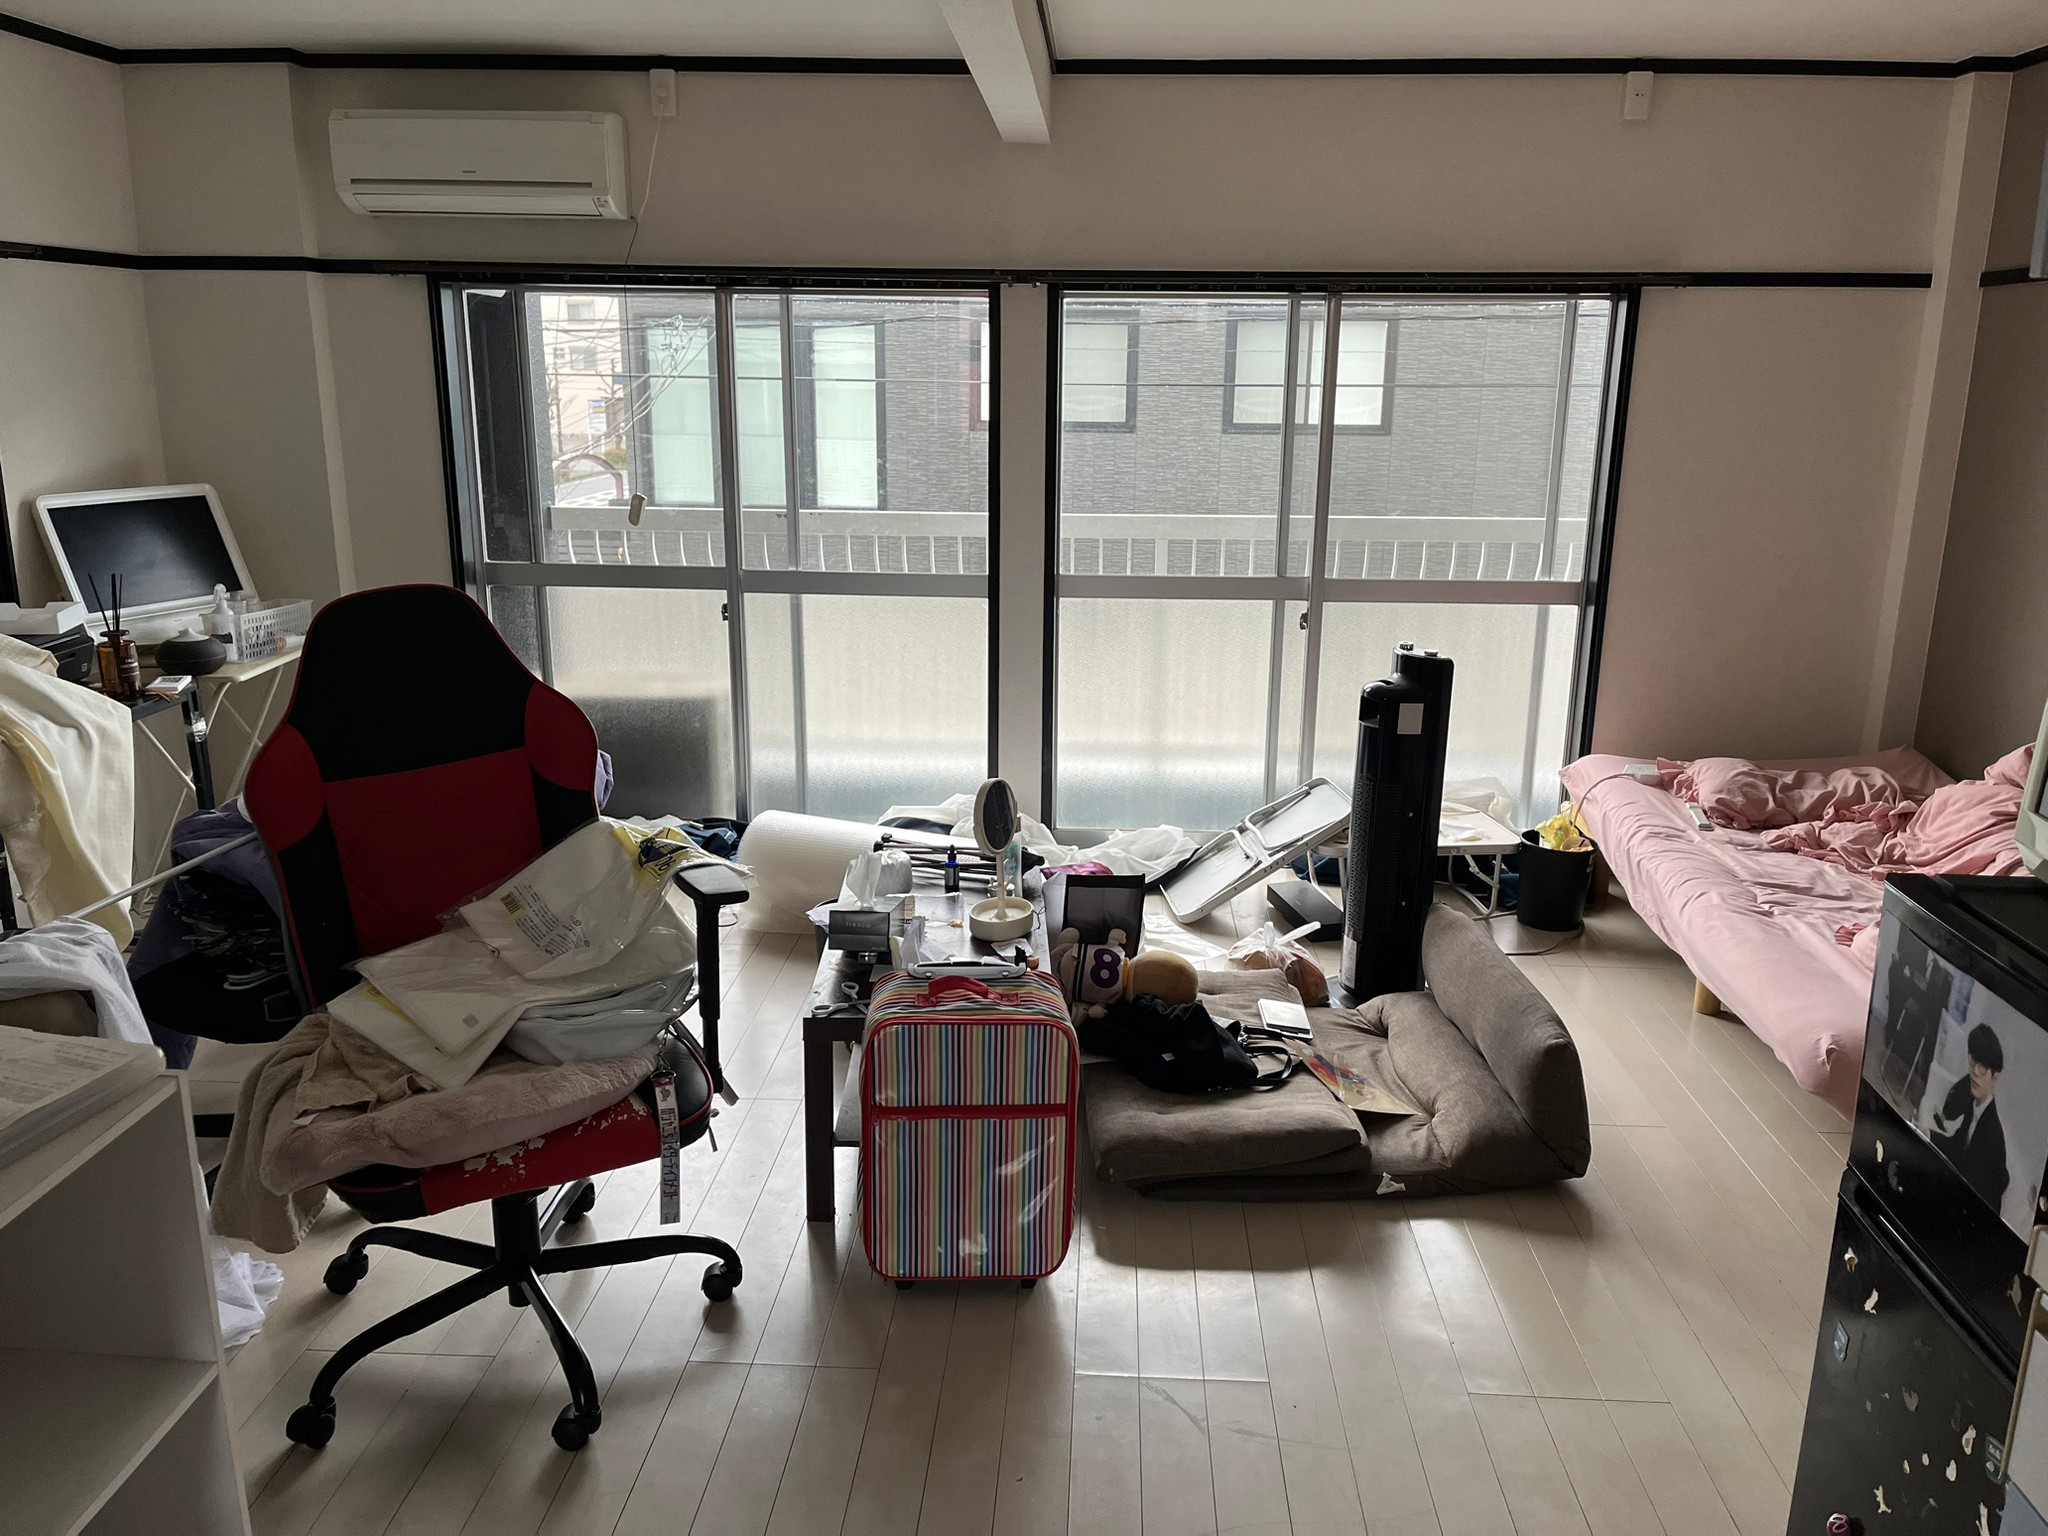 椅子、衣類、テーブル、ソファー、キャリーケース、パソコン、カラーボックス、冷蔵庫、ベッドの回収前の状態